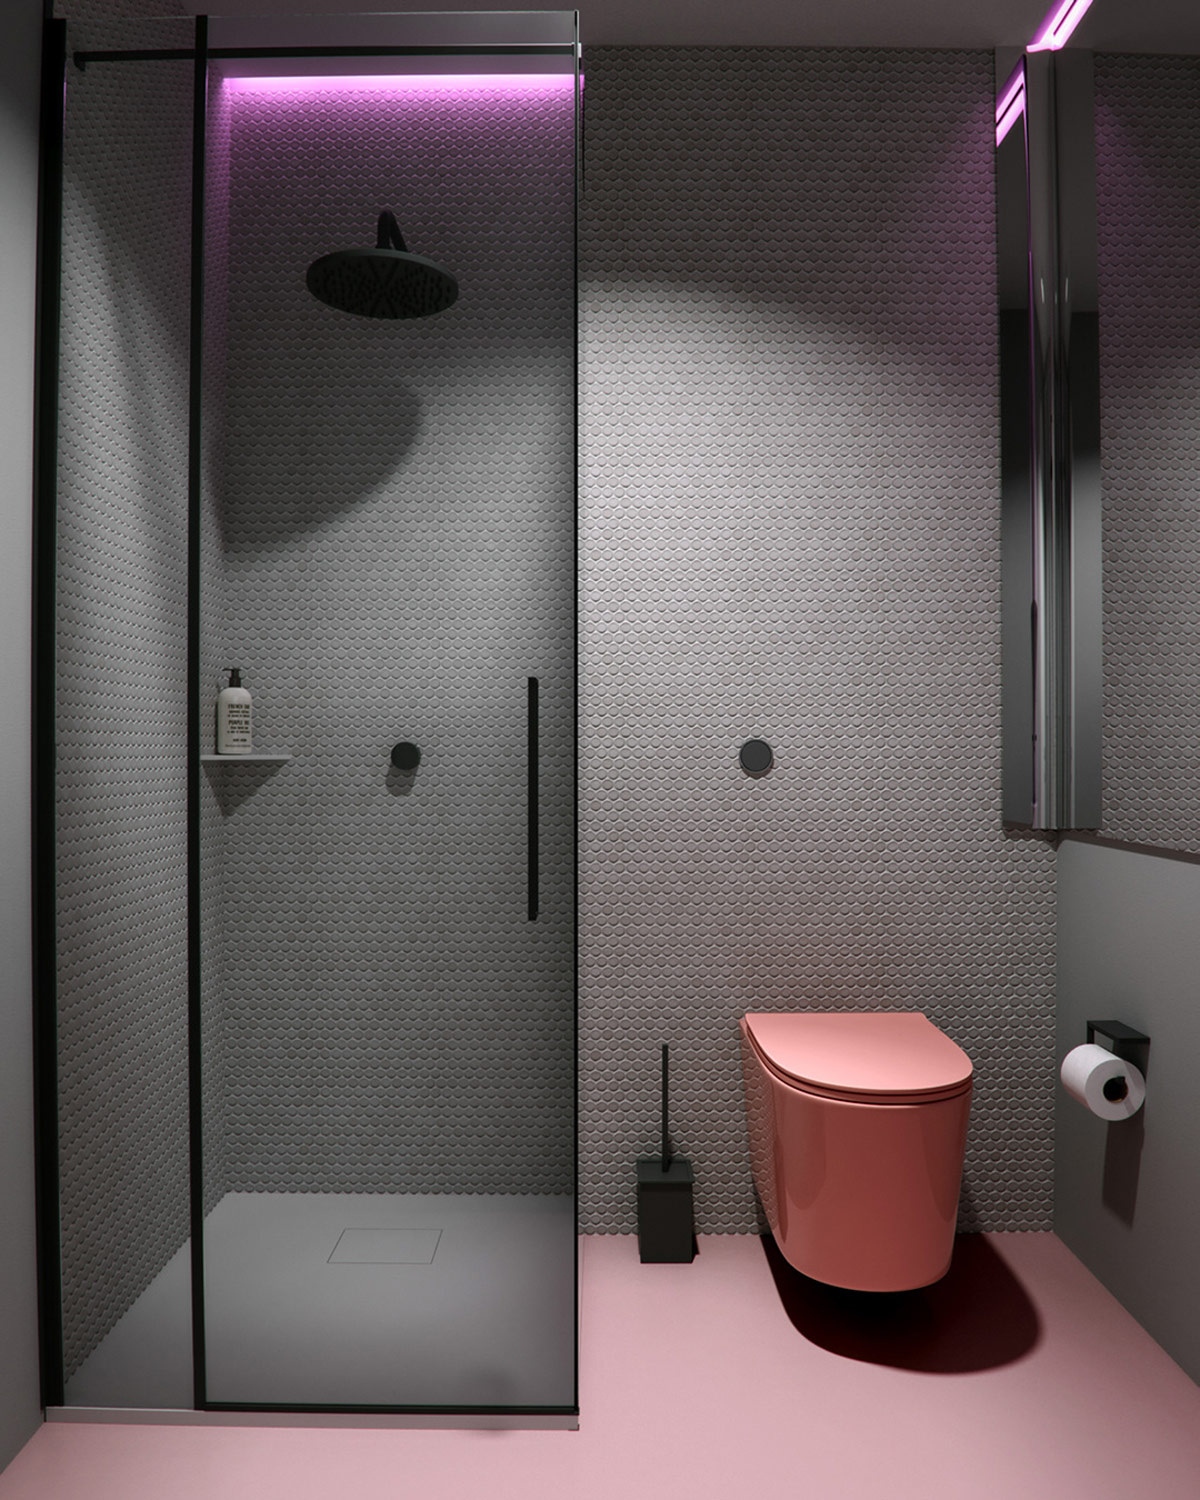 hình ảnh phòng tắm với cửa kính trượt, bồn cầu  và sàn màu hồng